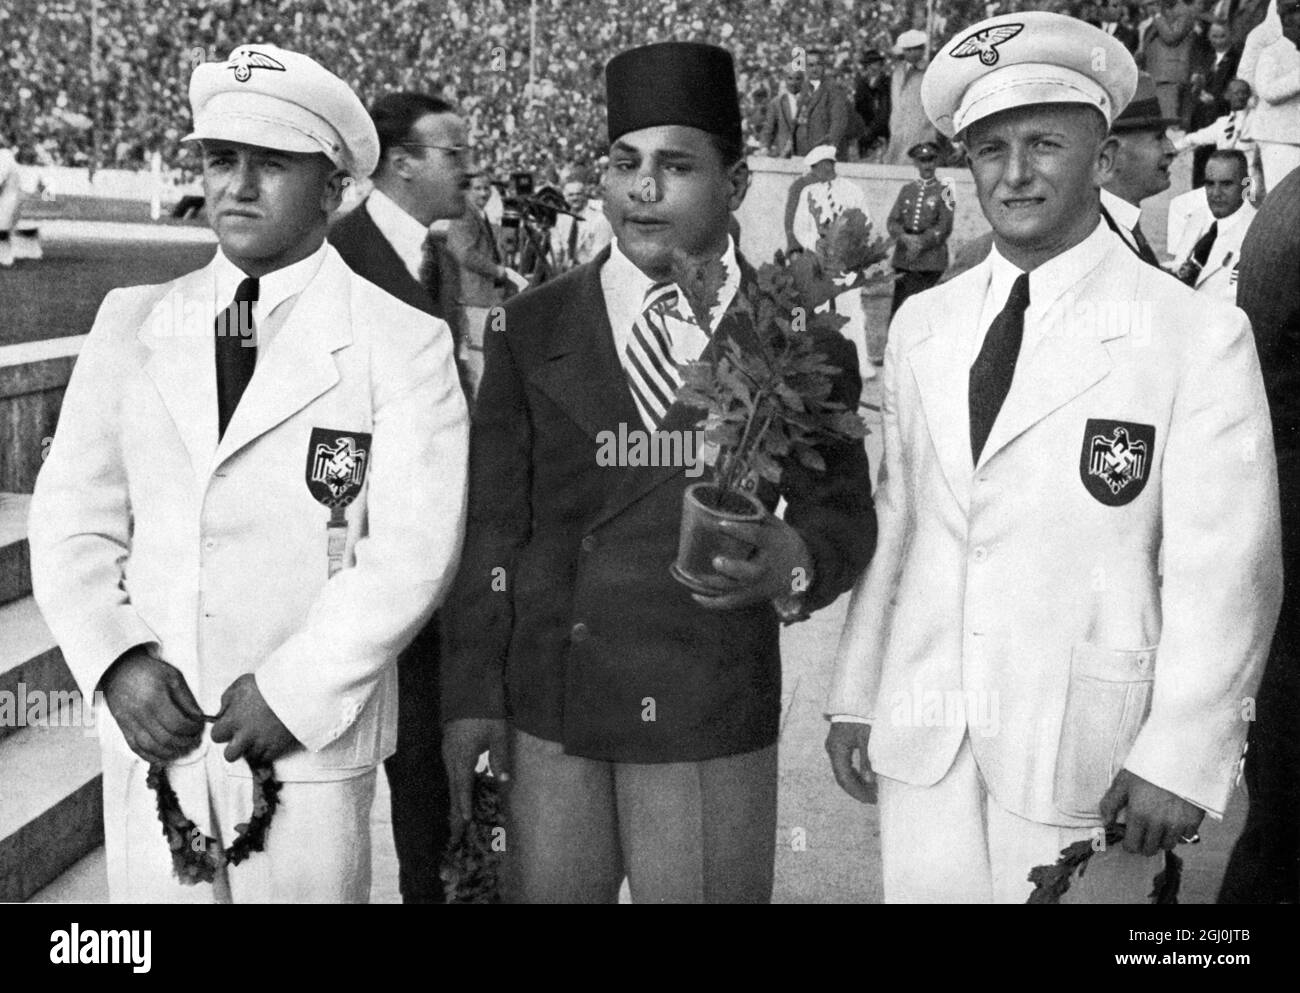 Olimpiadi del 1936, Berlino - Weightlifter vincitori: 1. Touni-Egitto (centro), 2. Ismayr-Germania (a destra), e 3. Wagner-Germania (a sinistra). (Siegerehrung fur das Gewichtheben: 1. Touni-Agypton (mitte), 2. Ismayr-Deutschland (Rechts). 3. Wagner-Deutschland (Links).) ©TopFoto Foto Stock